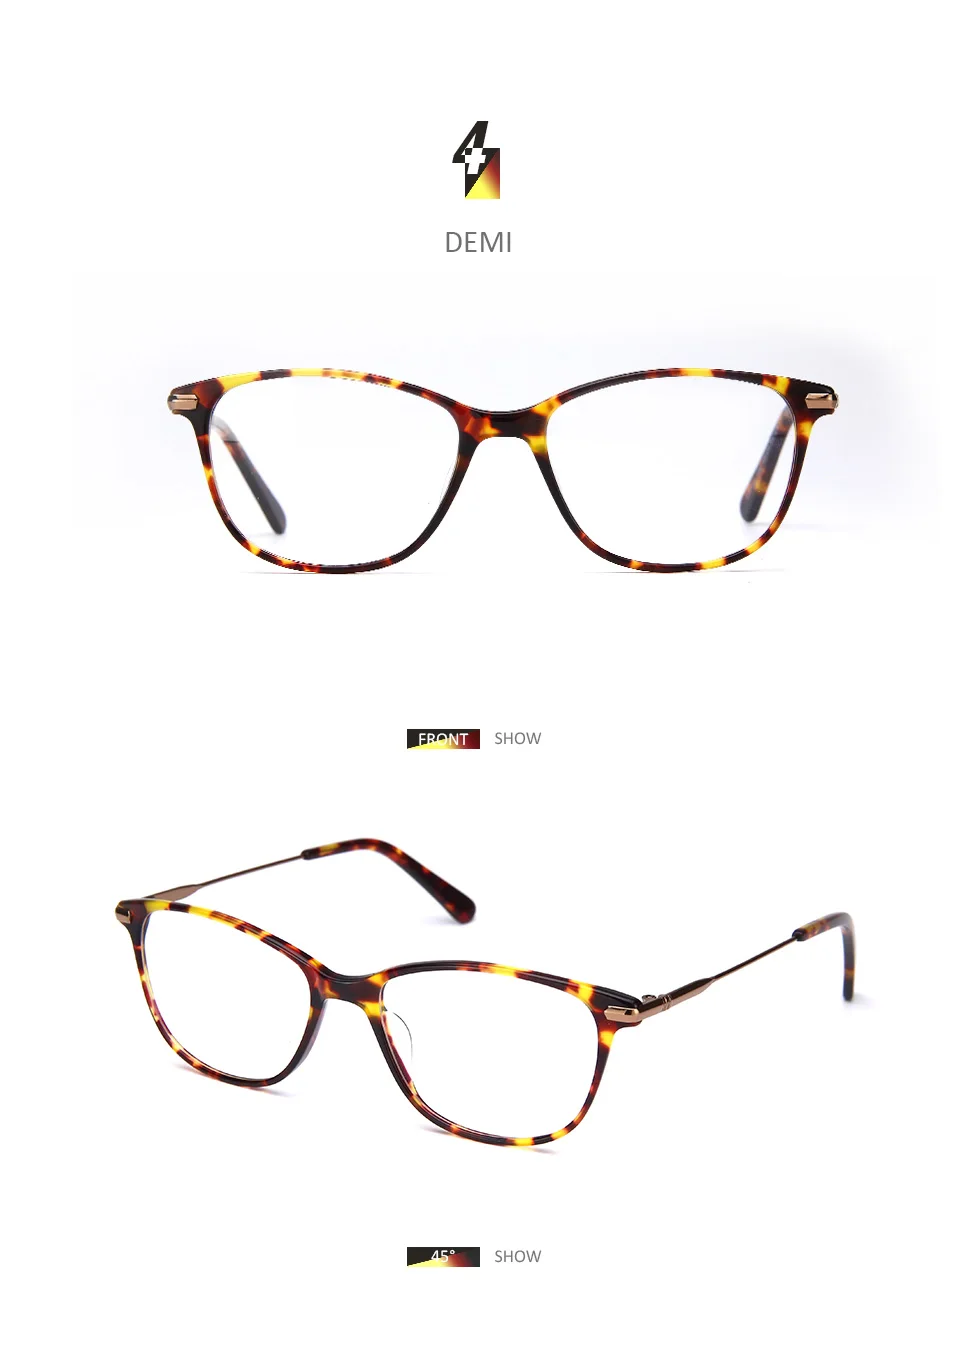 BLUEMOKY очки по рецепту, оправа для женщин, оптические очки для близорукости, оправа для очков, женские прозрачные линзы, прямоугольные поддельные очки